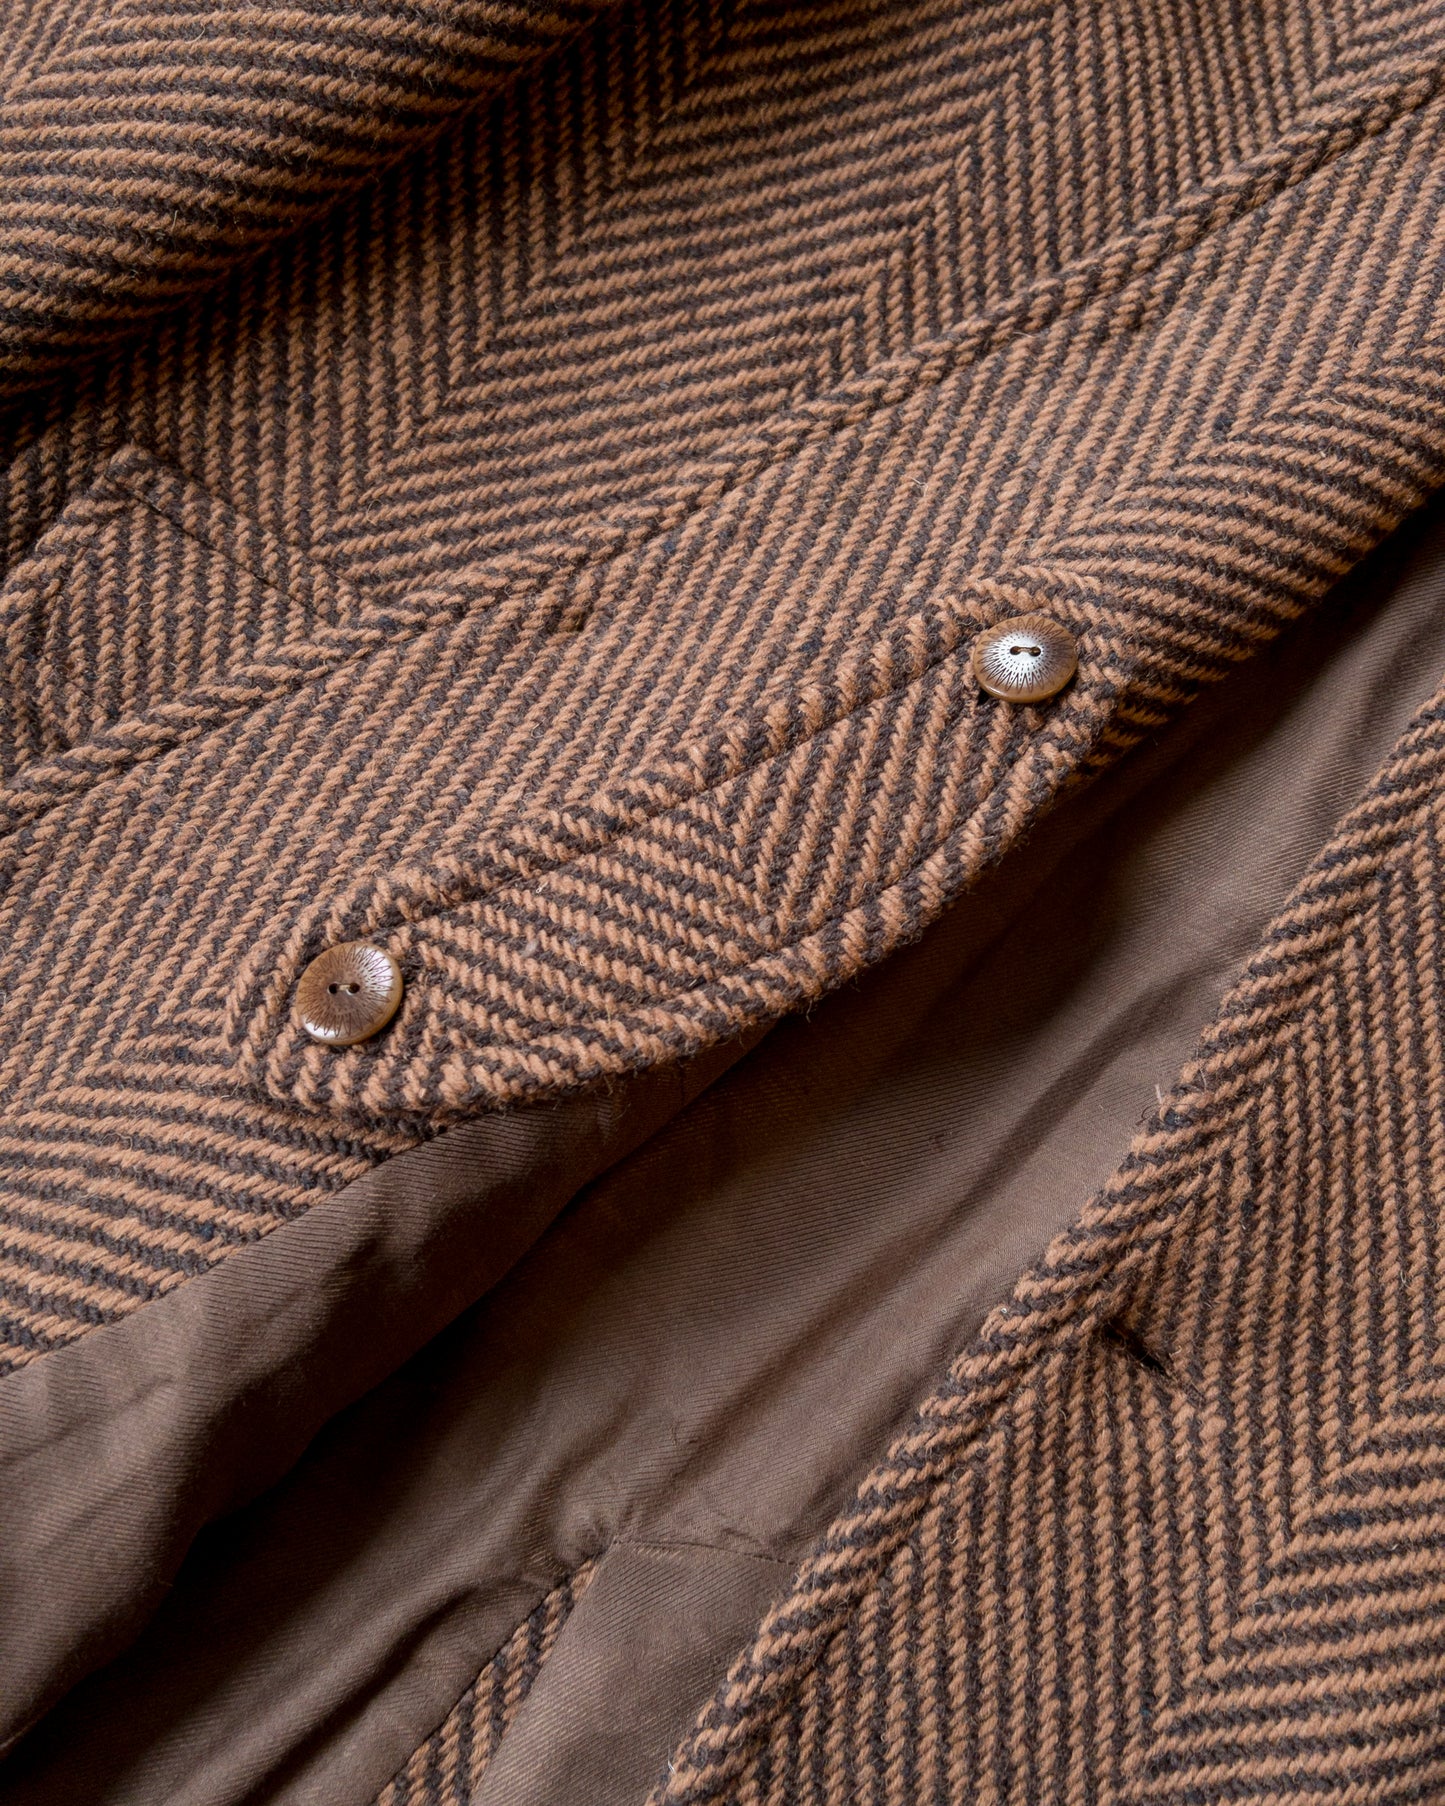 Raglan Wool Overcoat - Rust and Dark Brown Herringbone